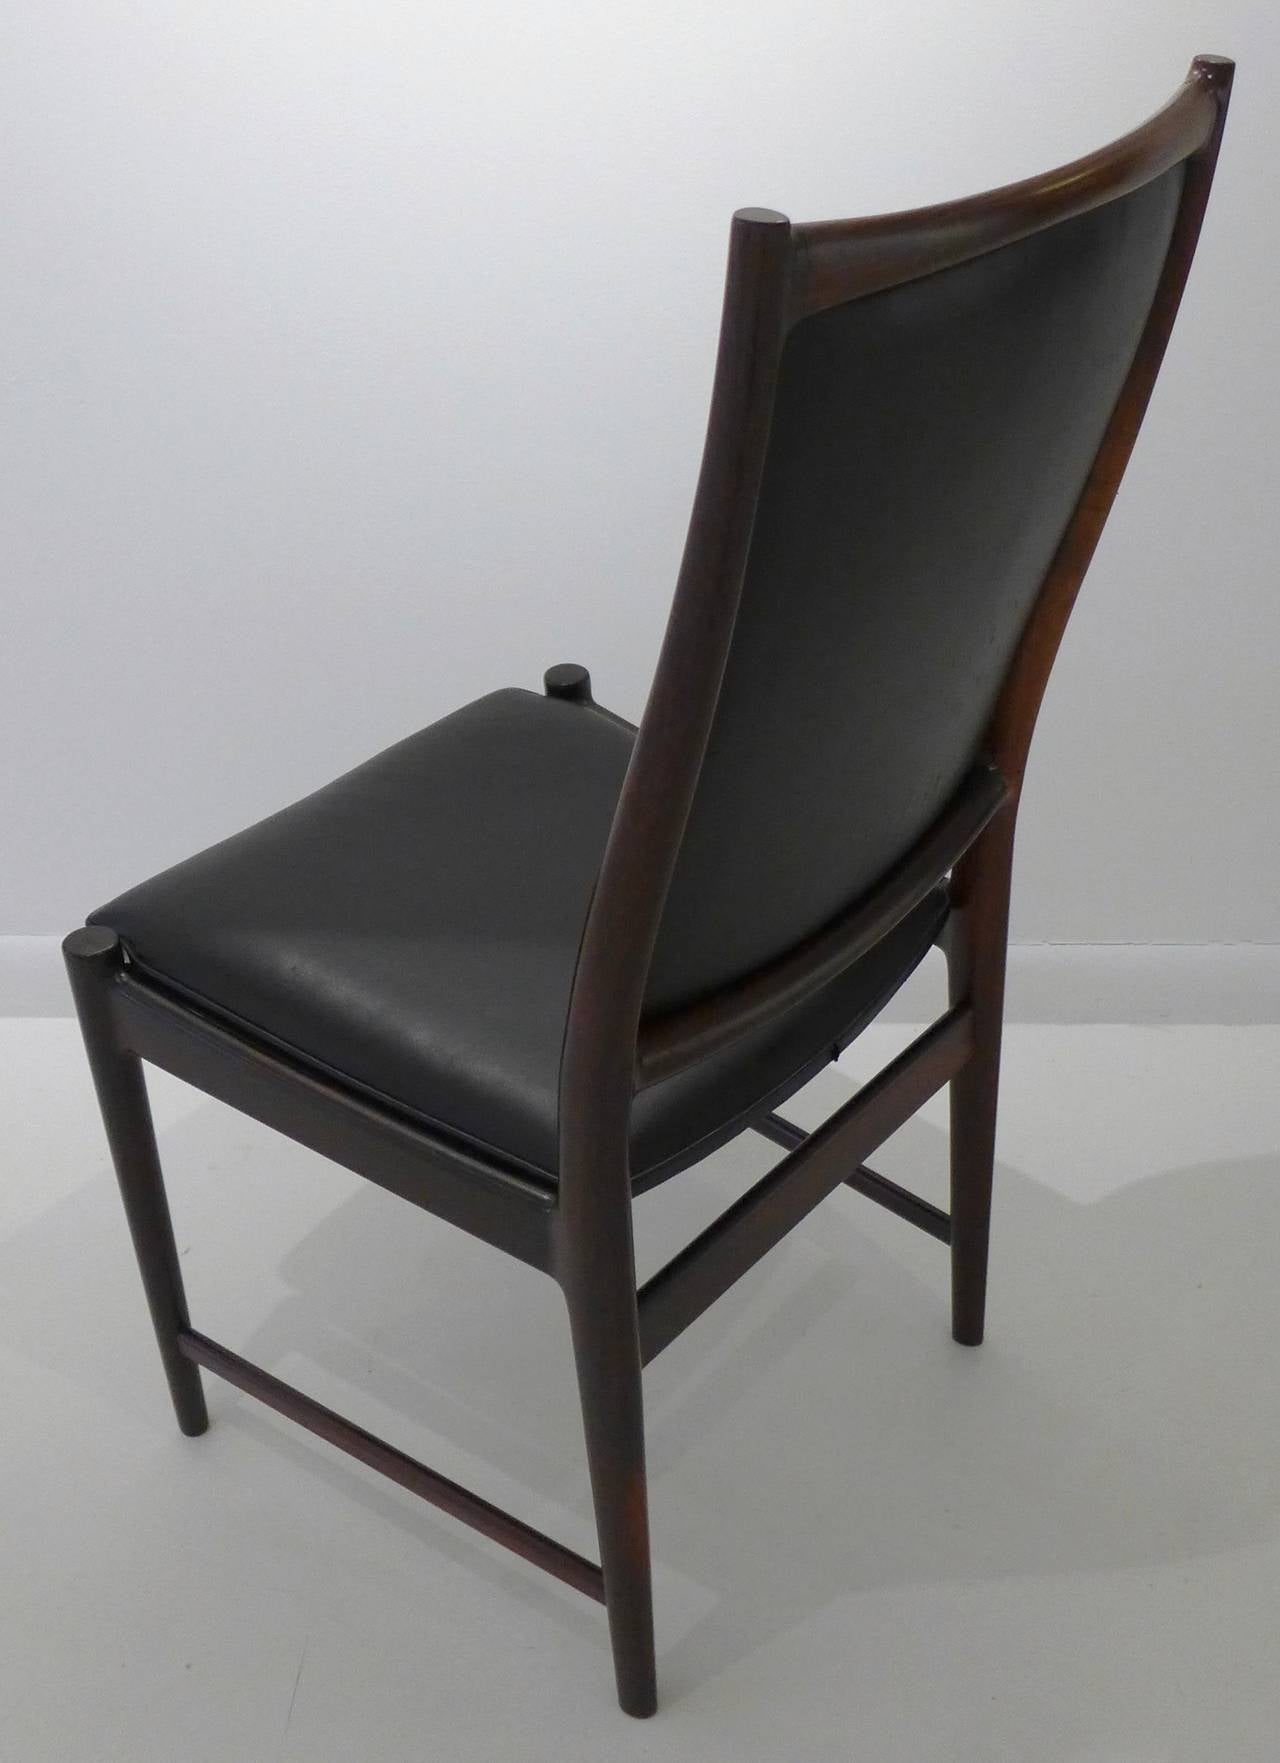 Carved Elegant Rosewood Chair by Torbjorn Afdal